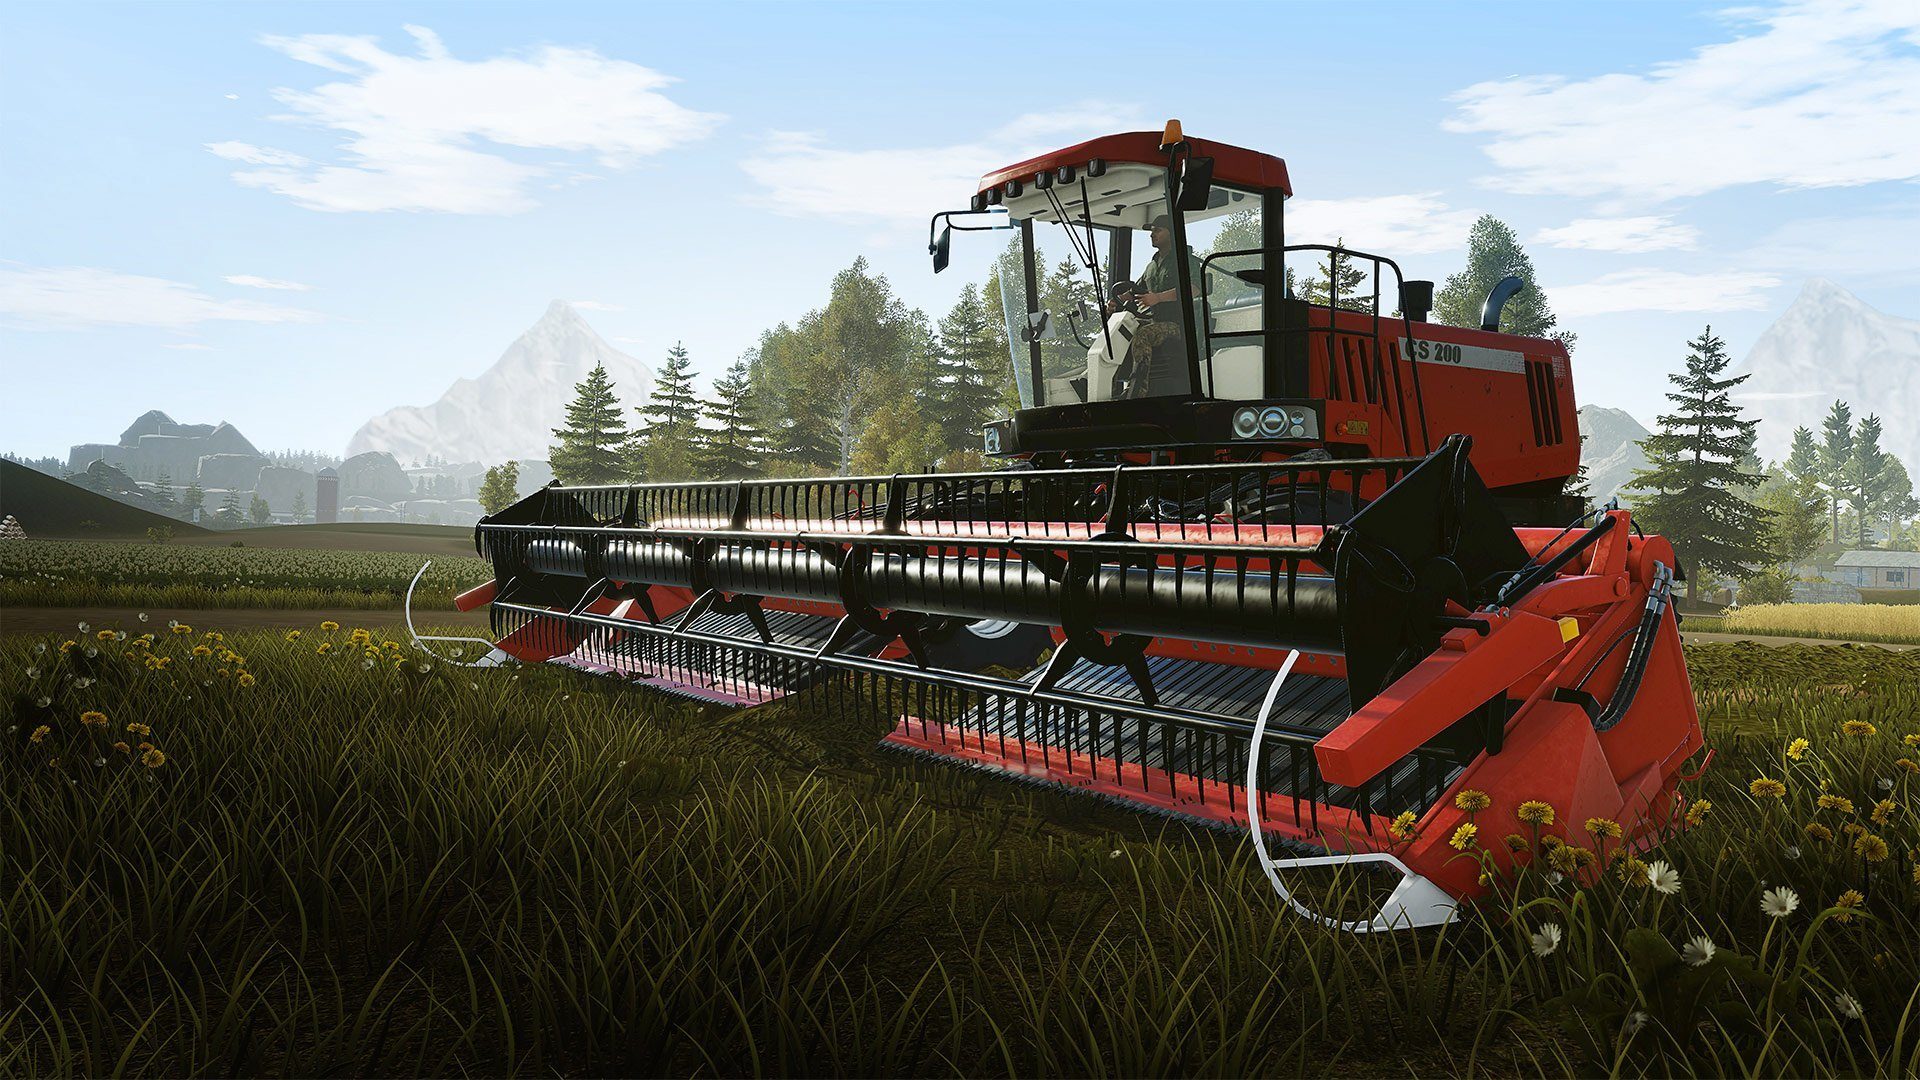 Farming Simulator 22 Mod Review